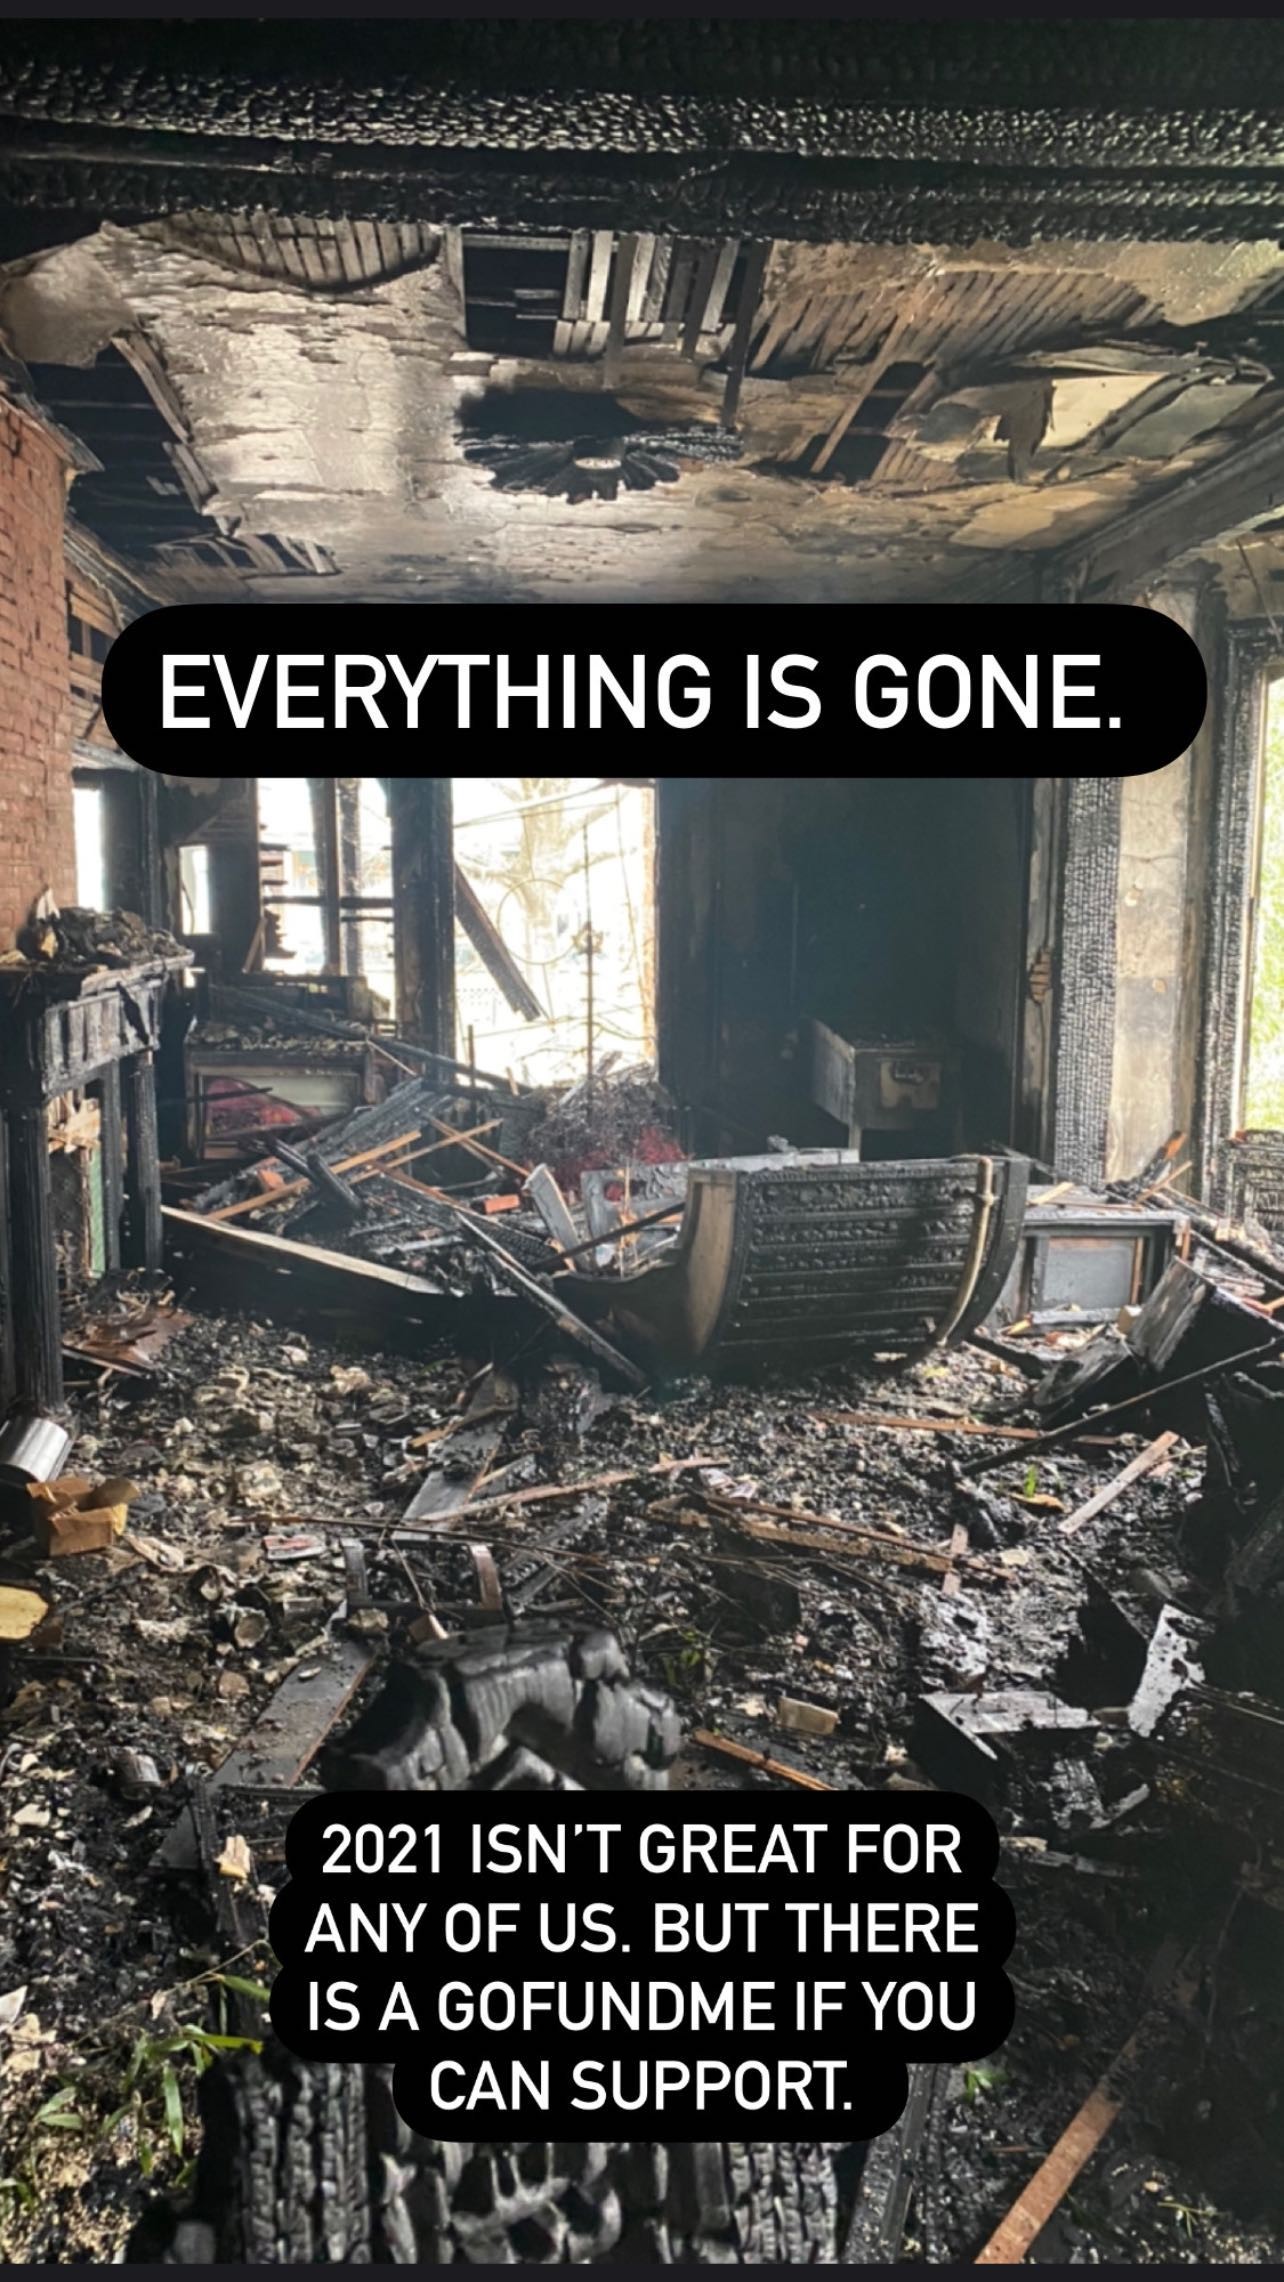 Matthew Camp fala de incêndio em sua casa (Foto:  City of Poughkeepsie Hictoric District and Landmarks Preservation Commission)